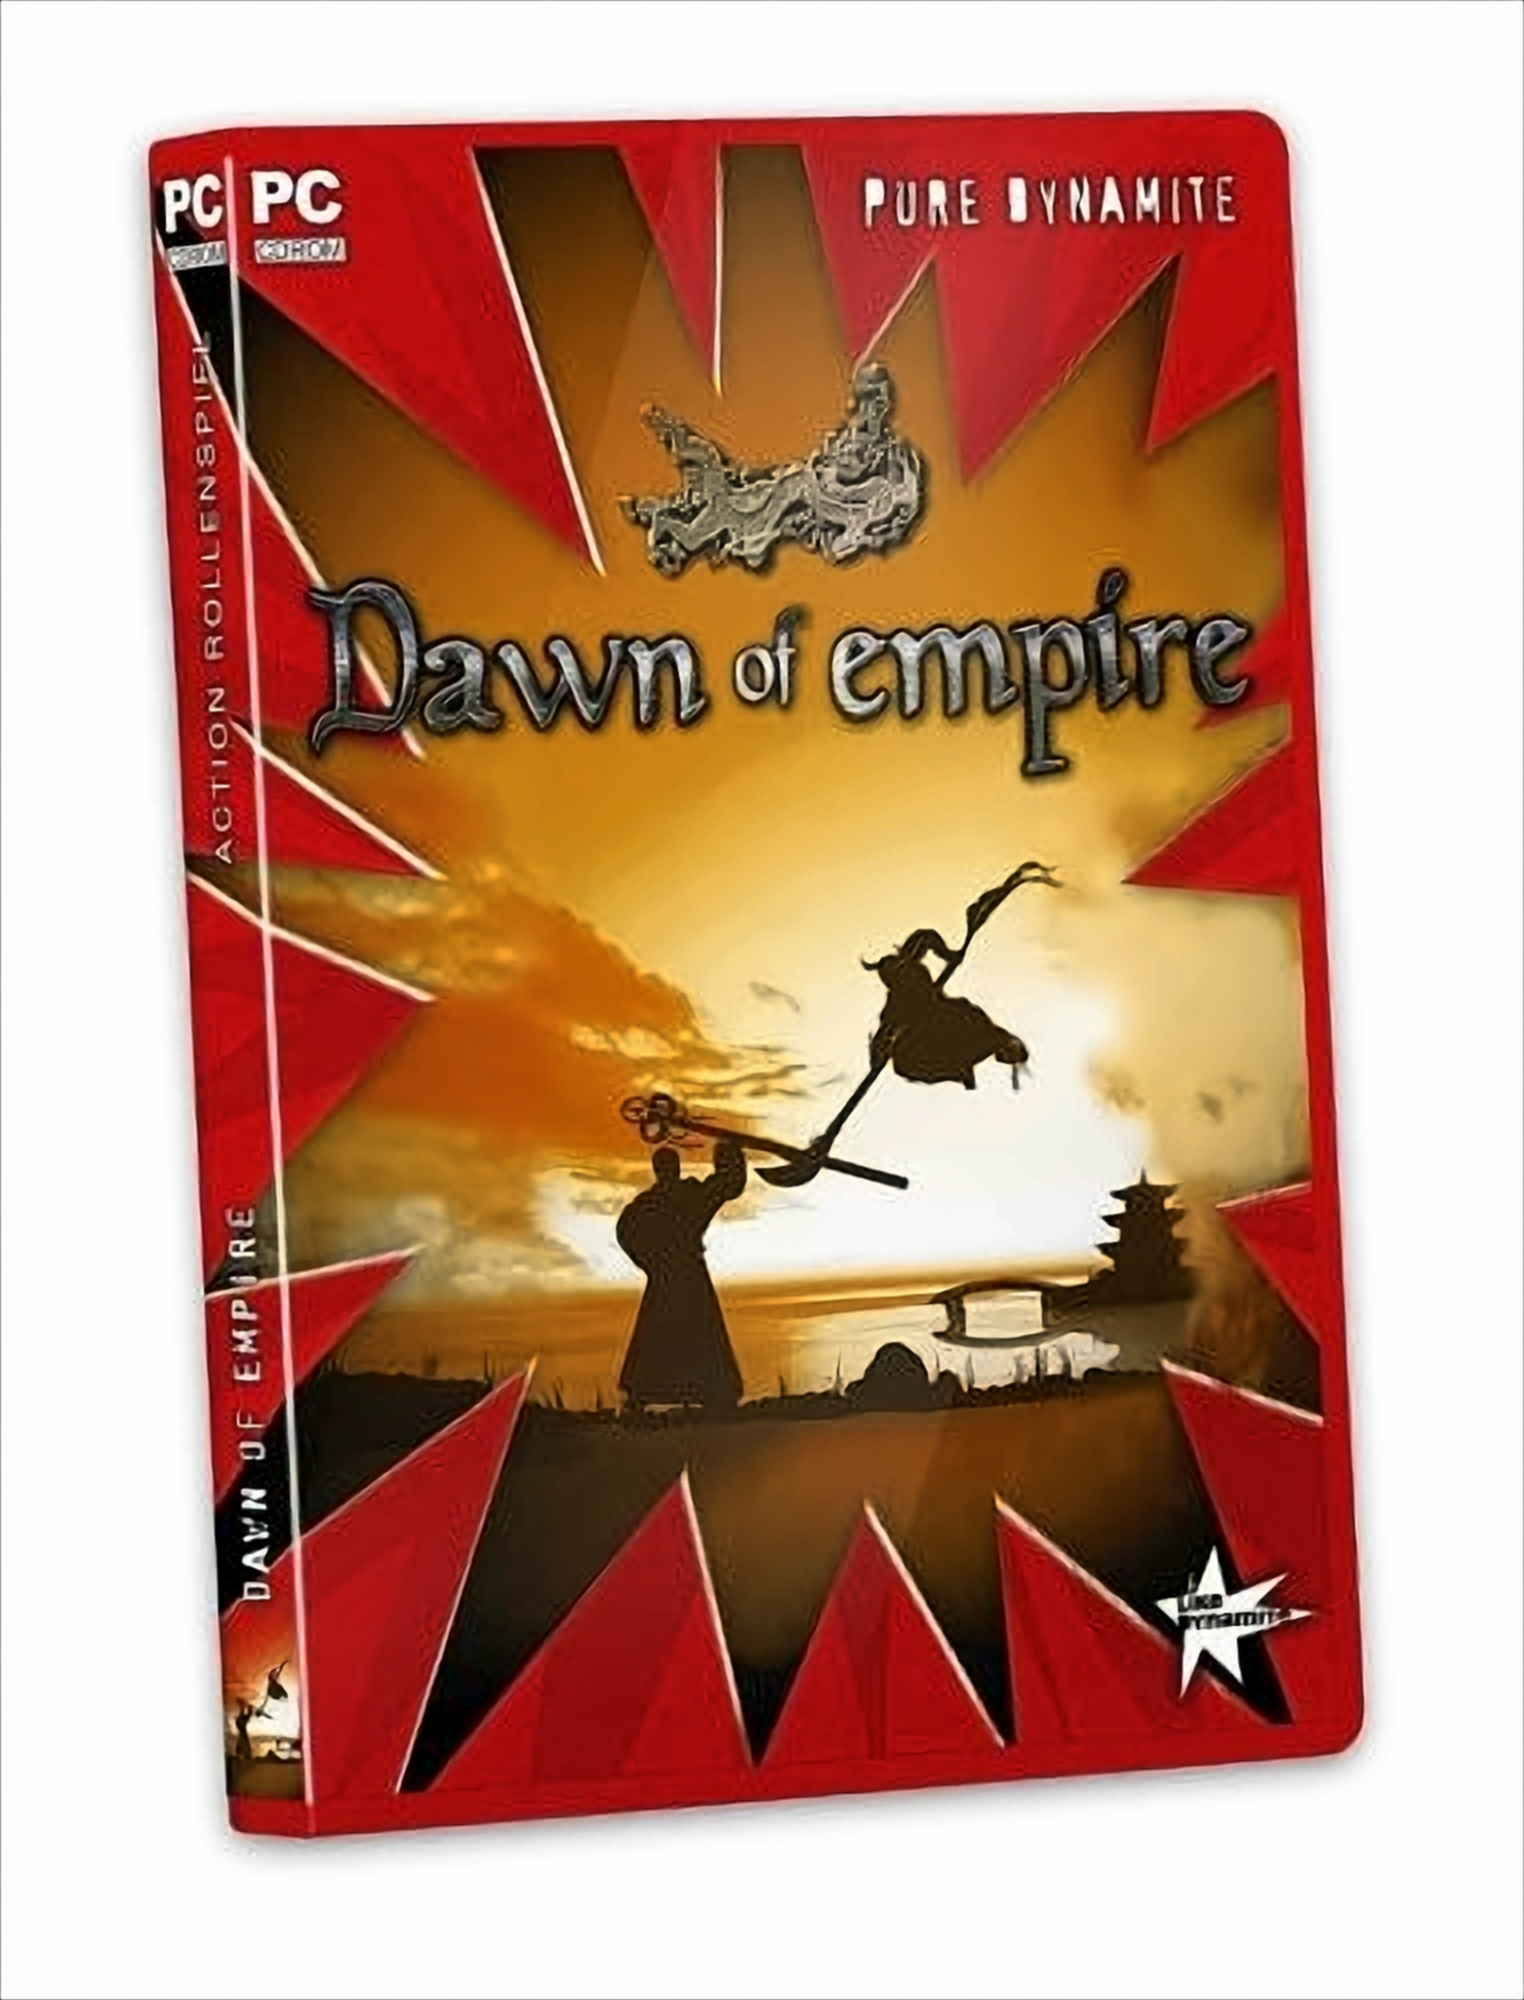 Dawn of Empire - [PC] Dynamite] [Pure